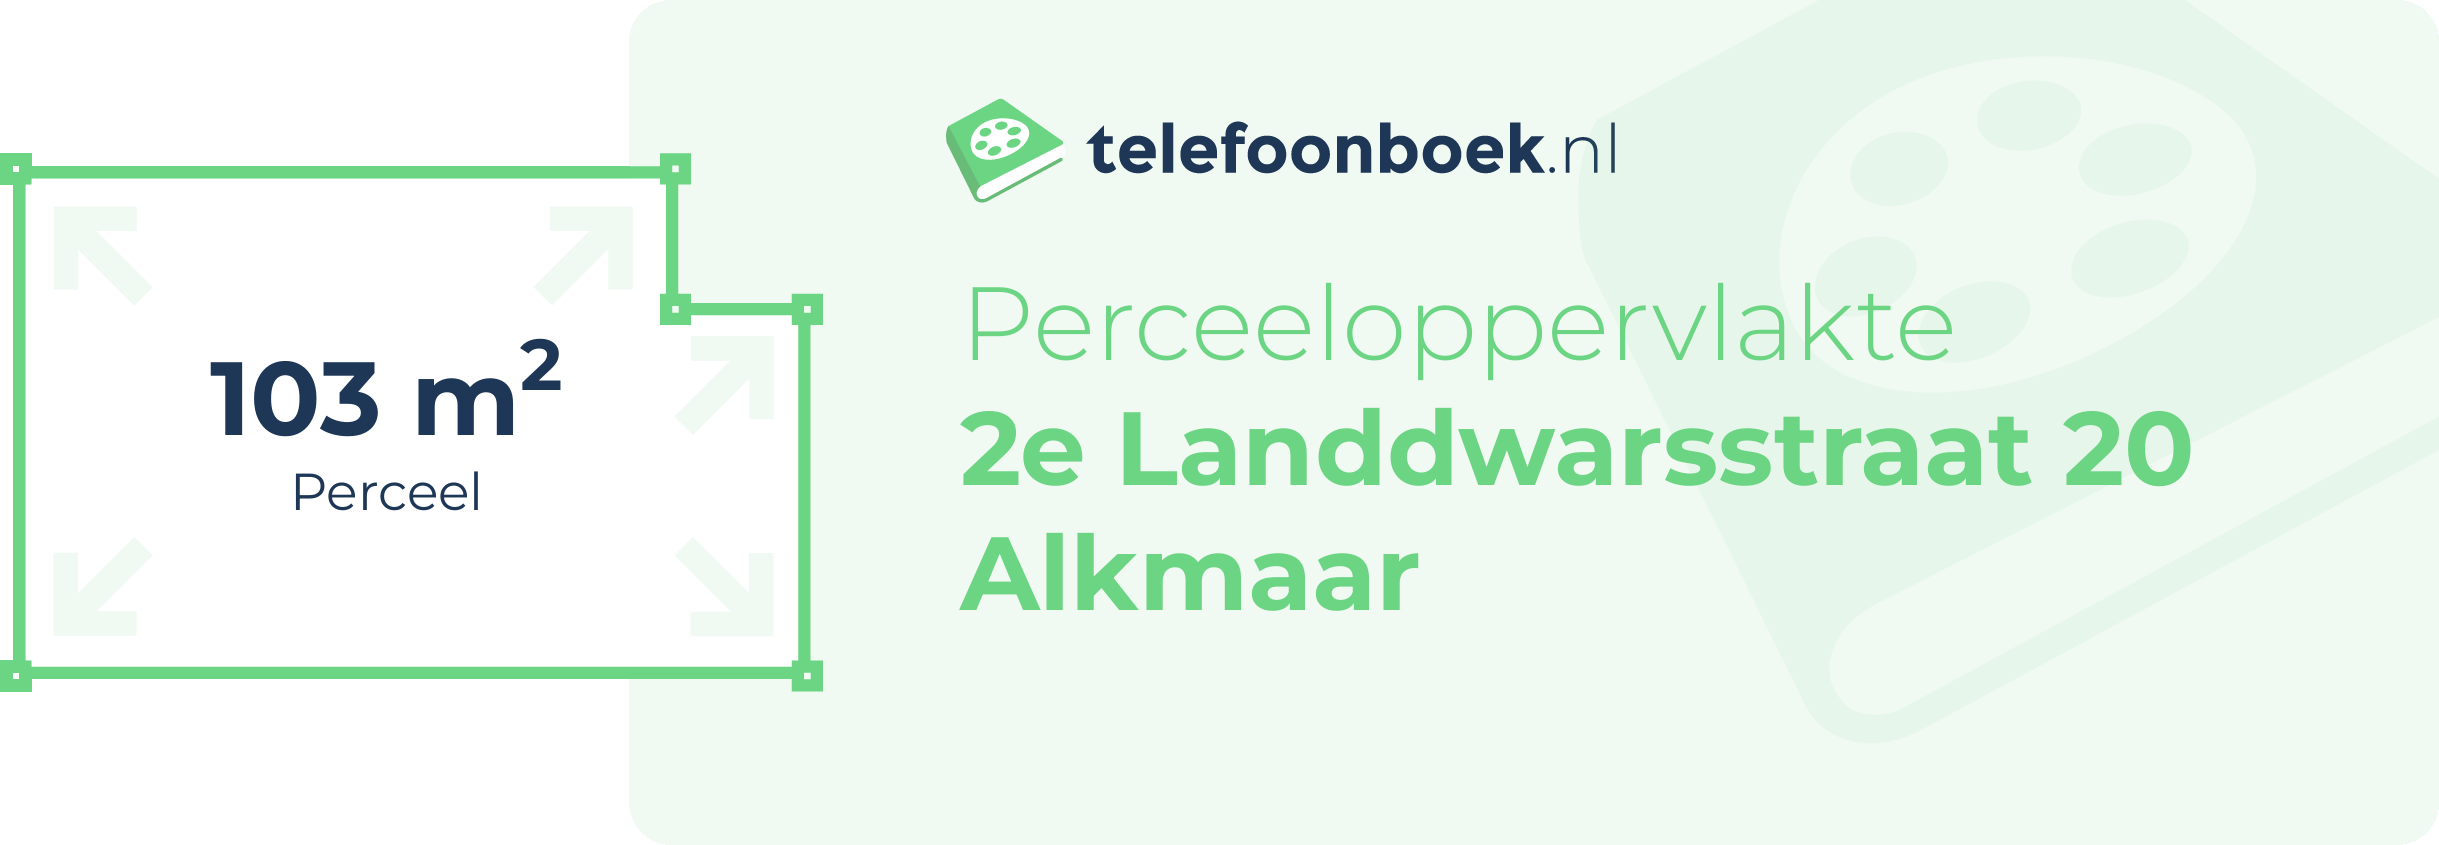 Perceeloppervlakte 2e Landdwarsstraat 20 Alkmaar